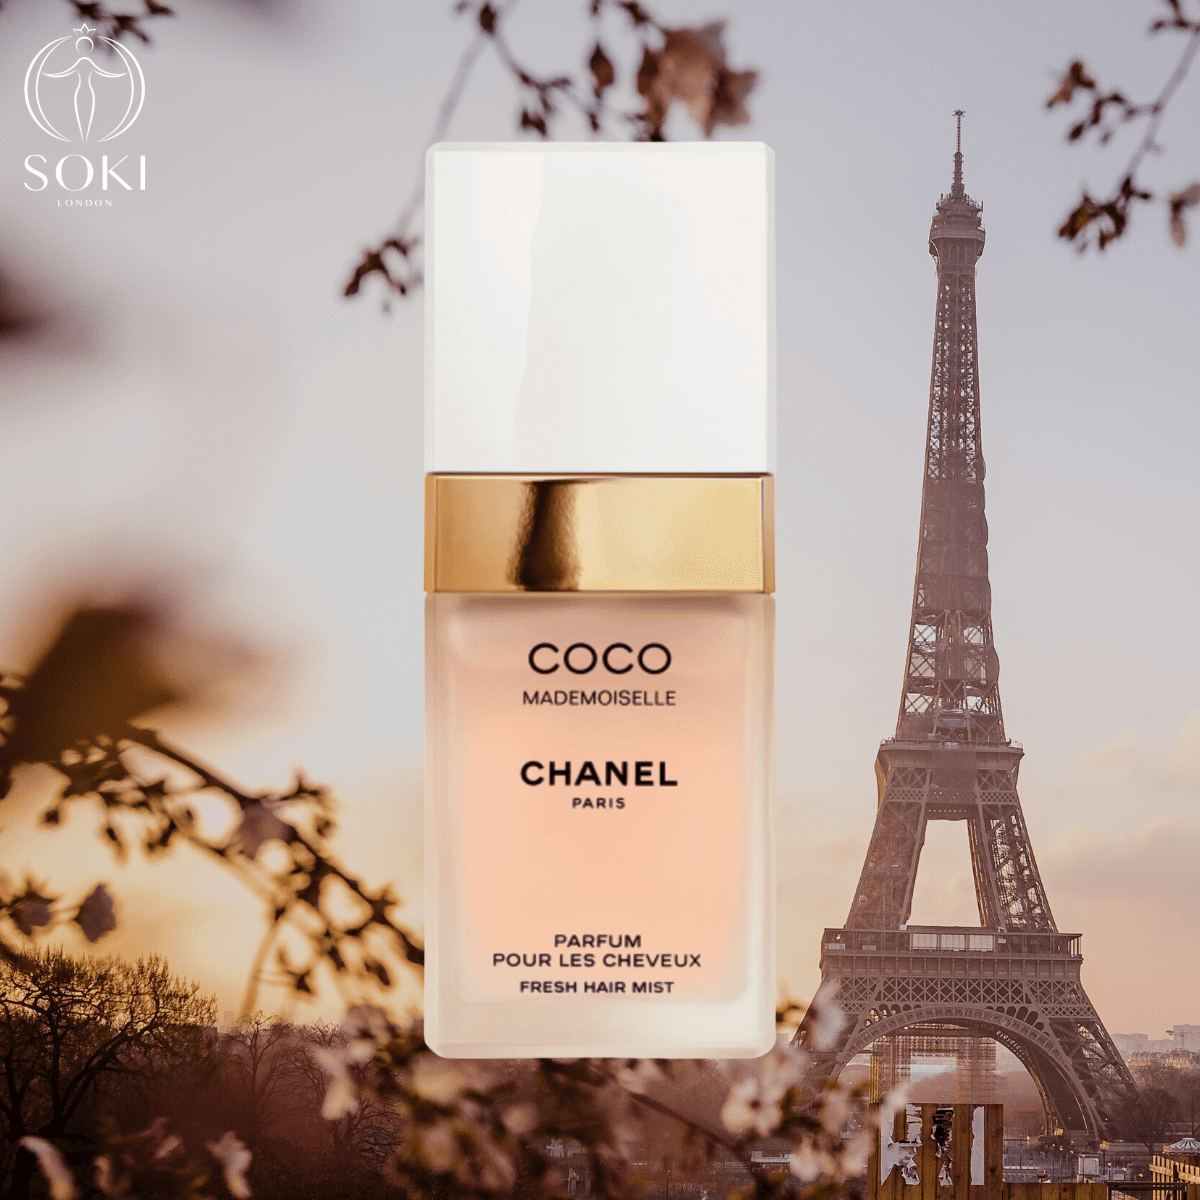 Chanel Coco Mademoiselle Hair Mist
Best perfume hair mists